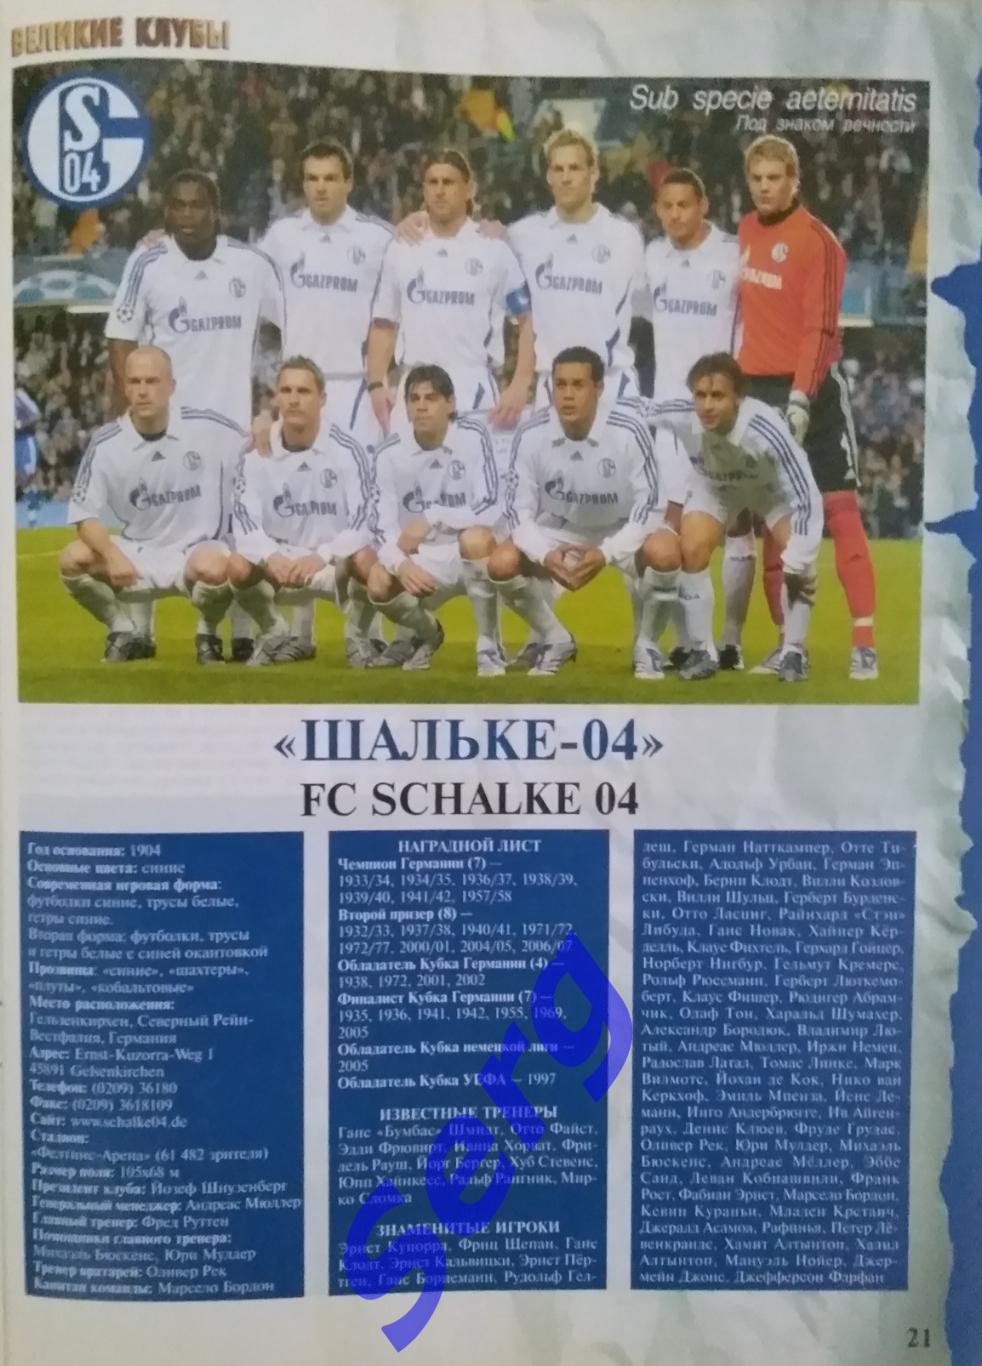 Еженедельник Футбол. Спецвыпуск Великие клубы Германии №11 2008 год 4